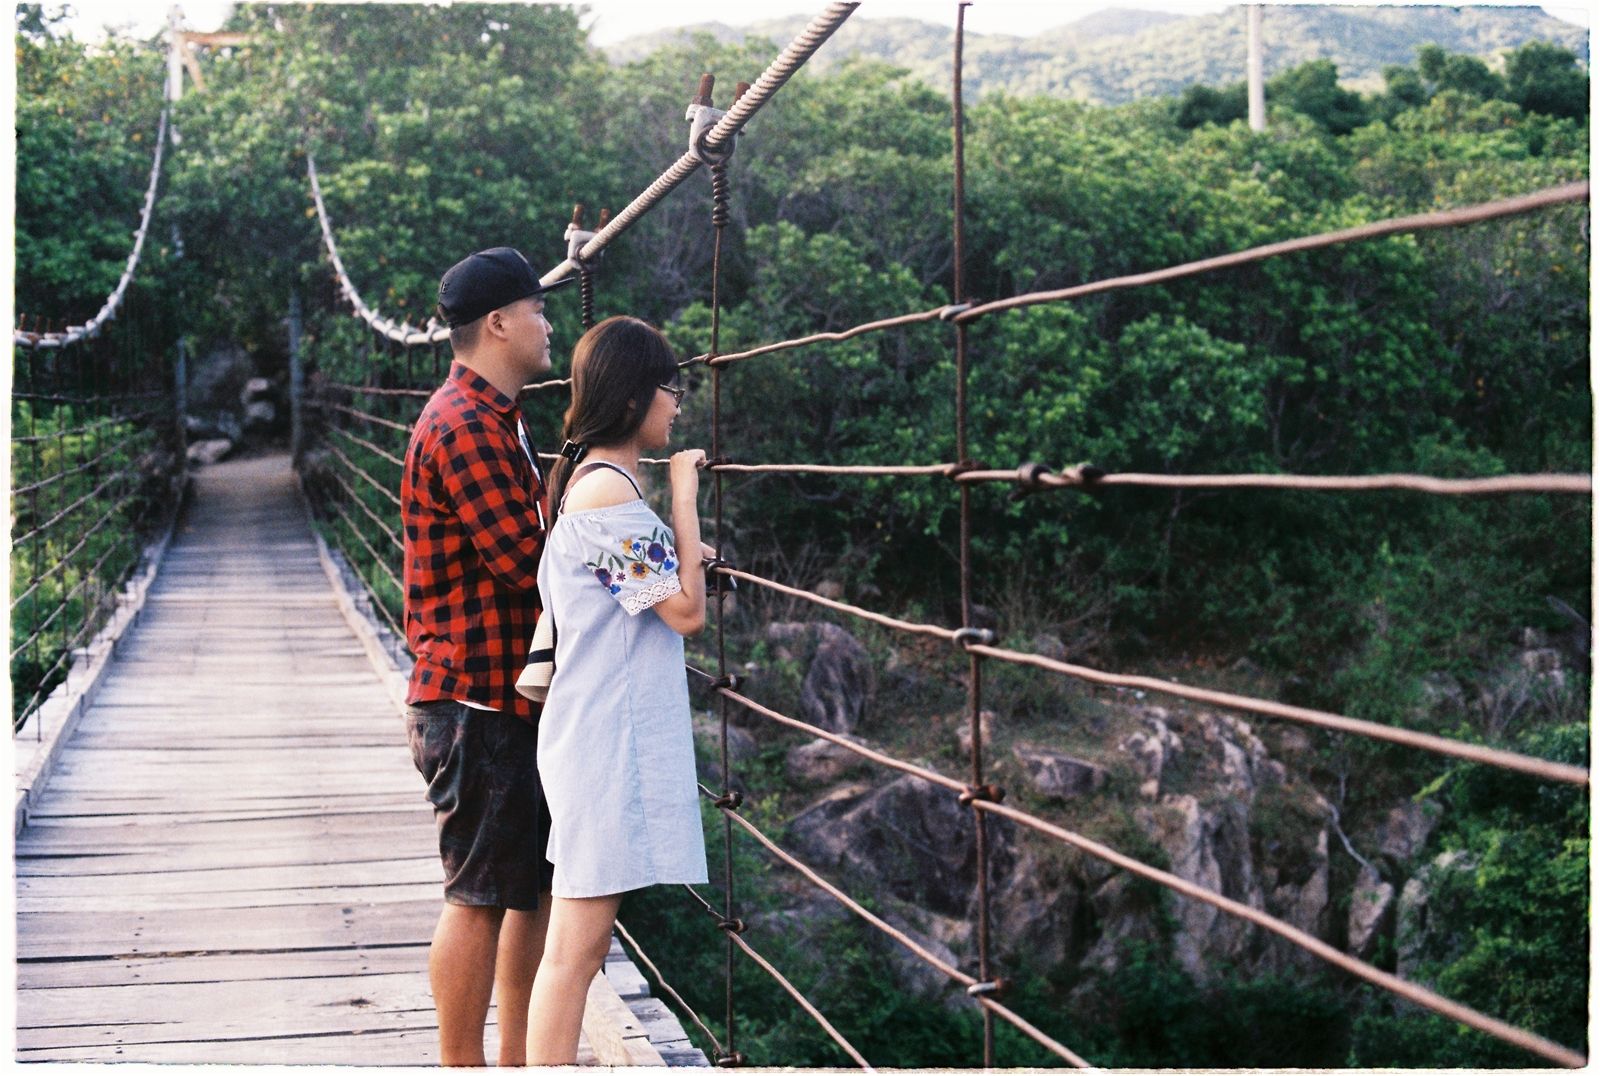 Ngắm nhìn từ cầu treo suối Lồ Ồ (Nguồn: metrip.vn)